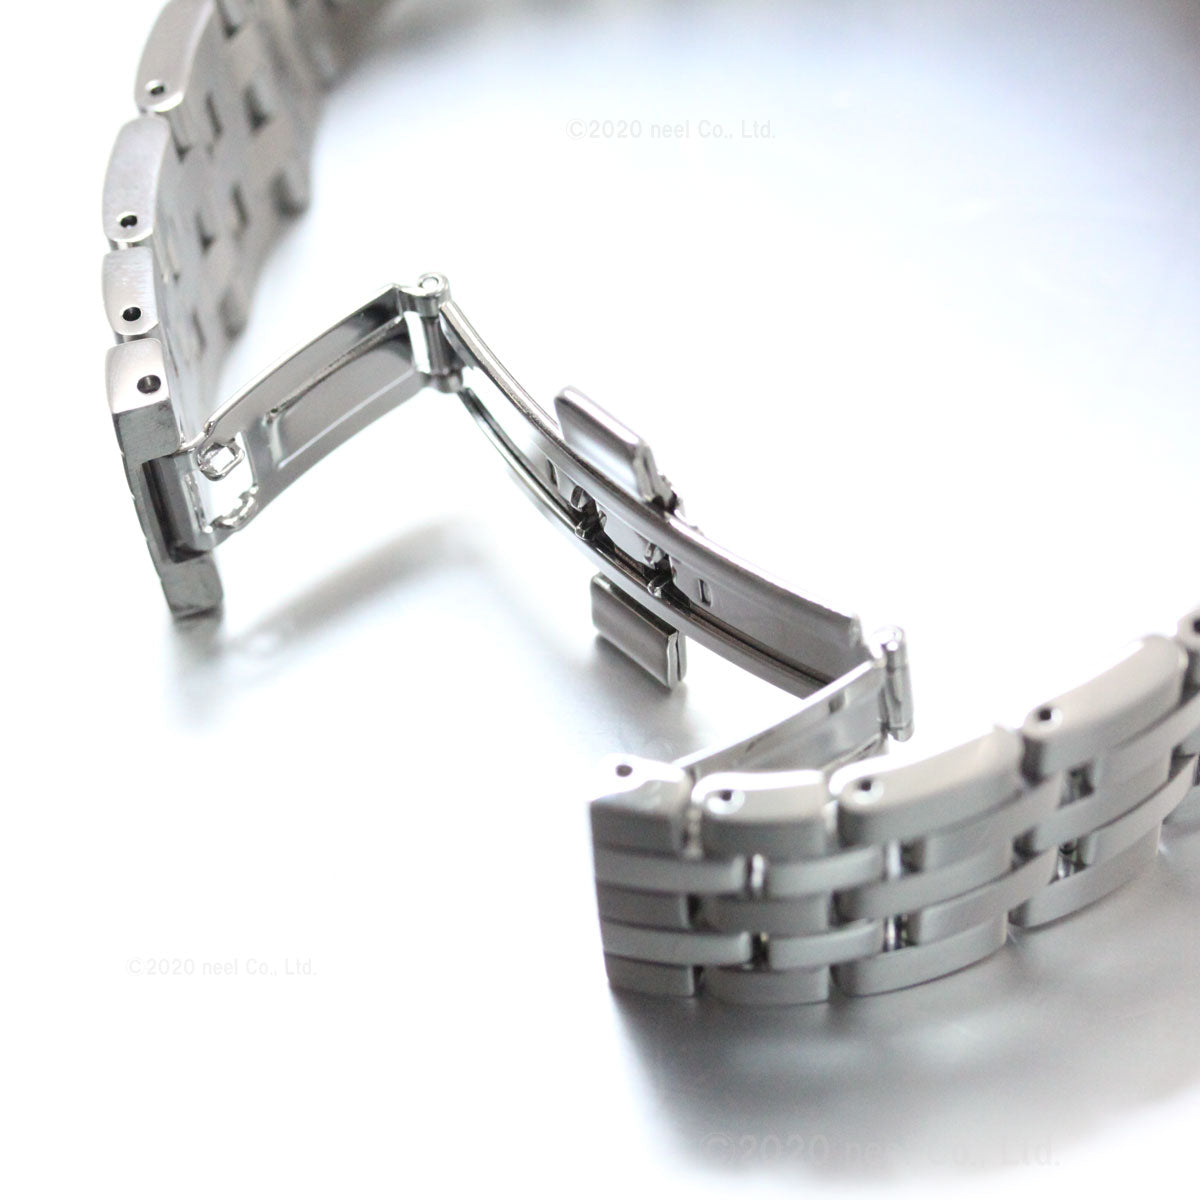 セイコー プレザージュ 自動巻き メカニカル メンズ 腕時計 カクテル SARY161